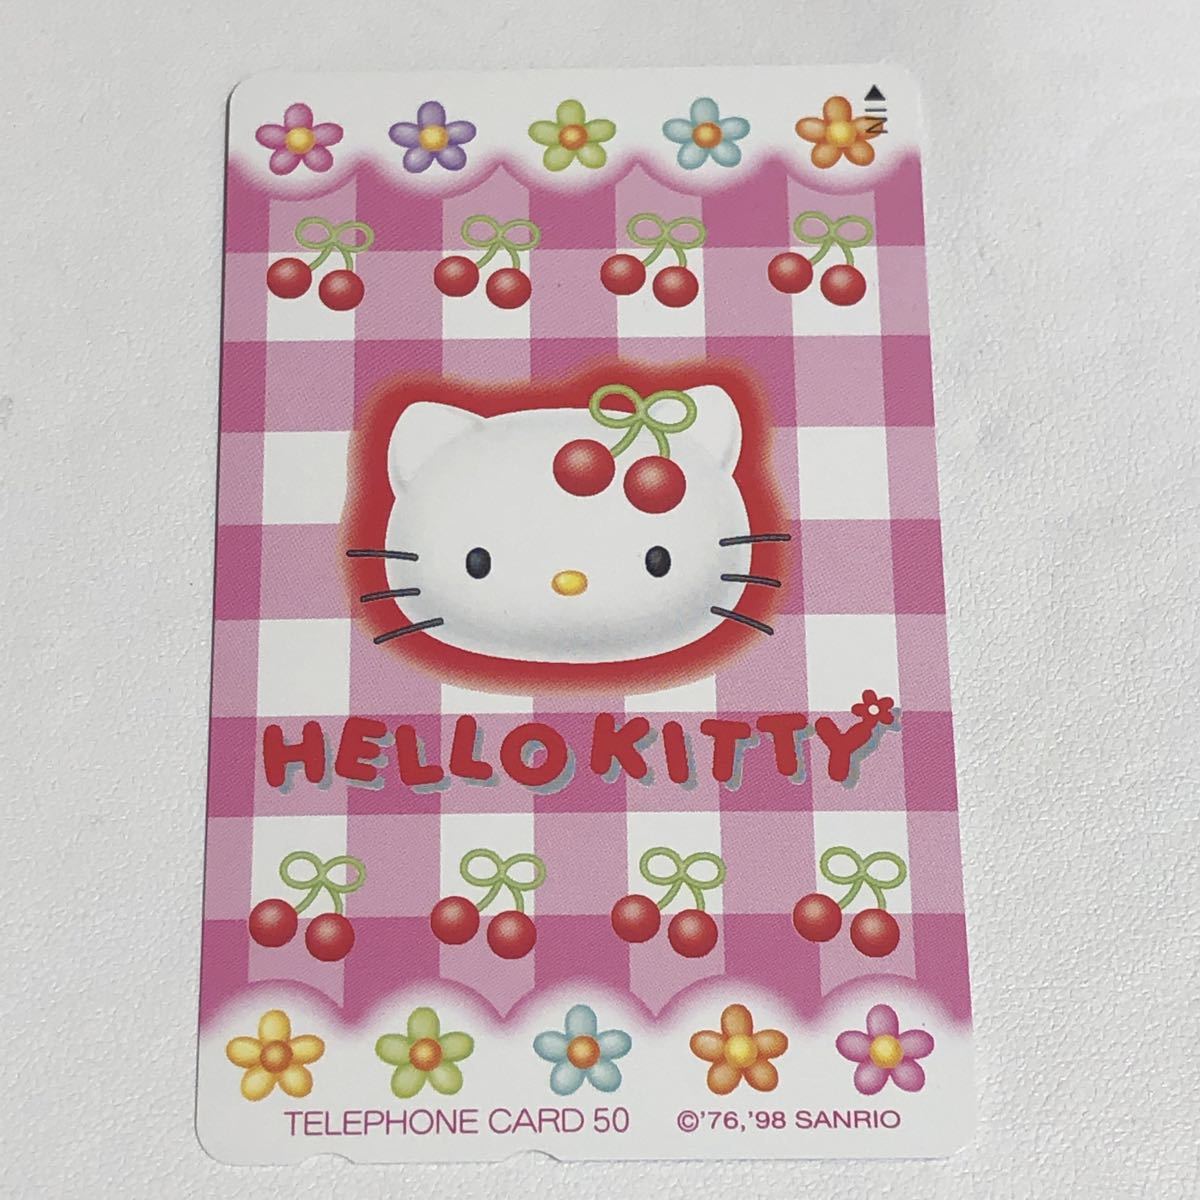  телефонная карточка Sanrio Hello Kitty телефон карта 